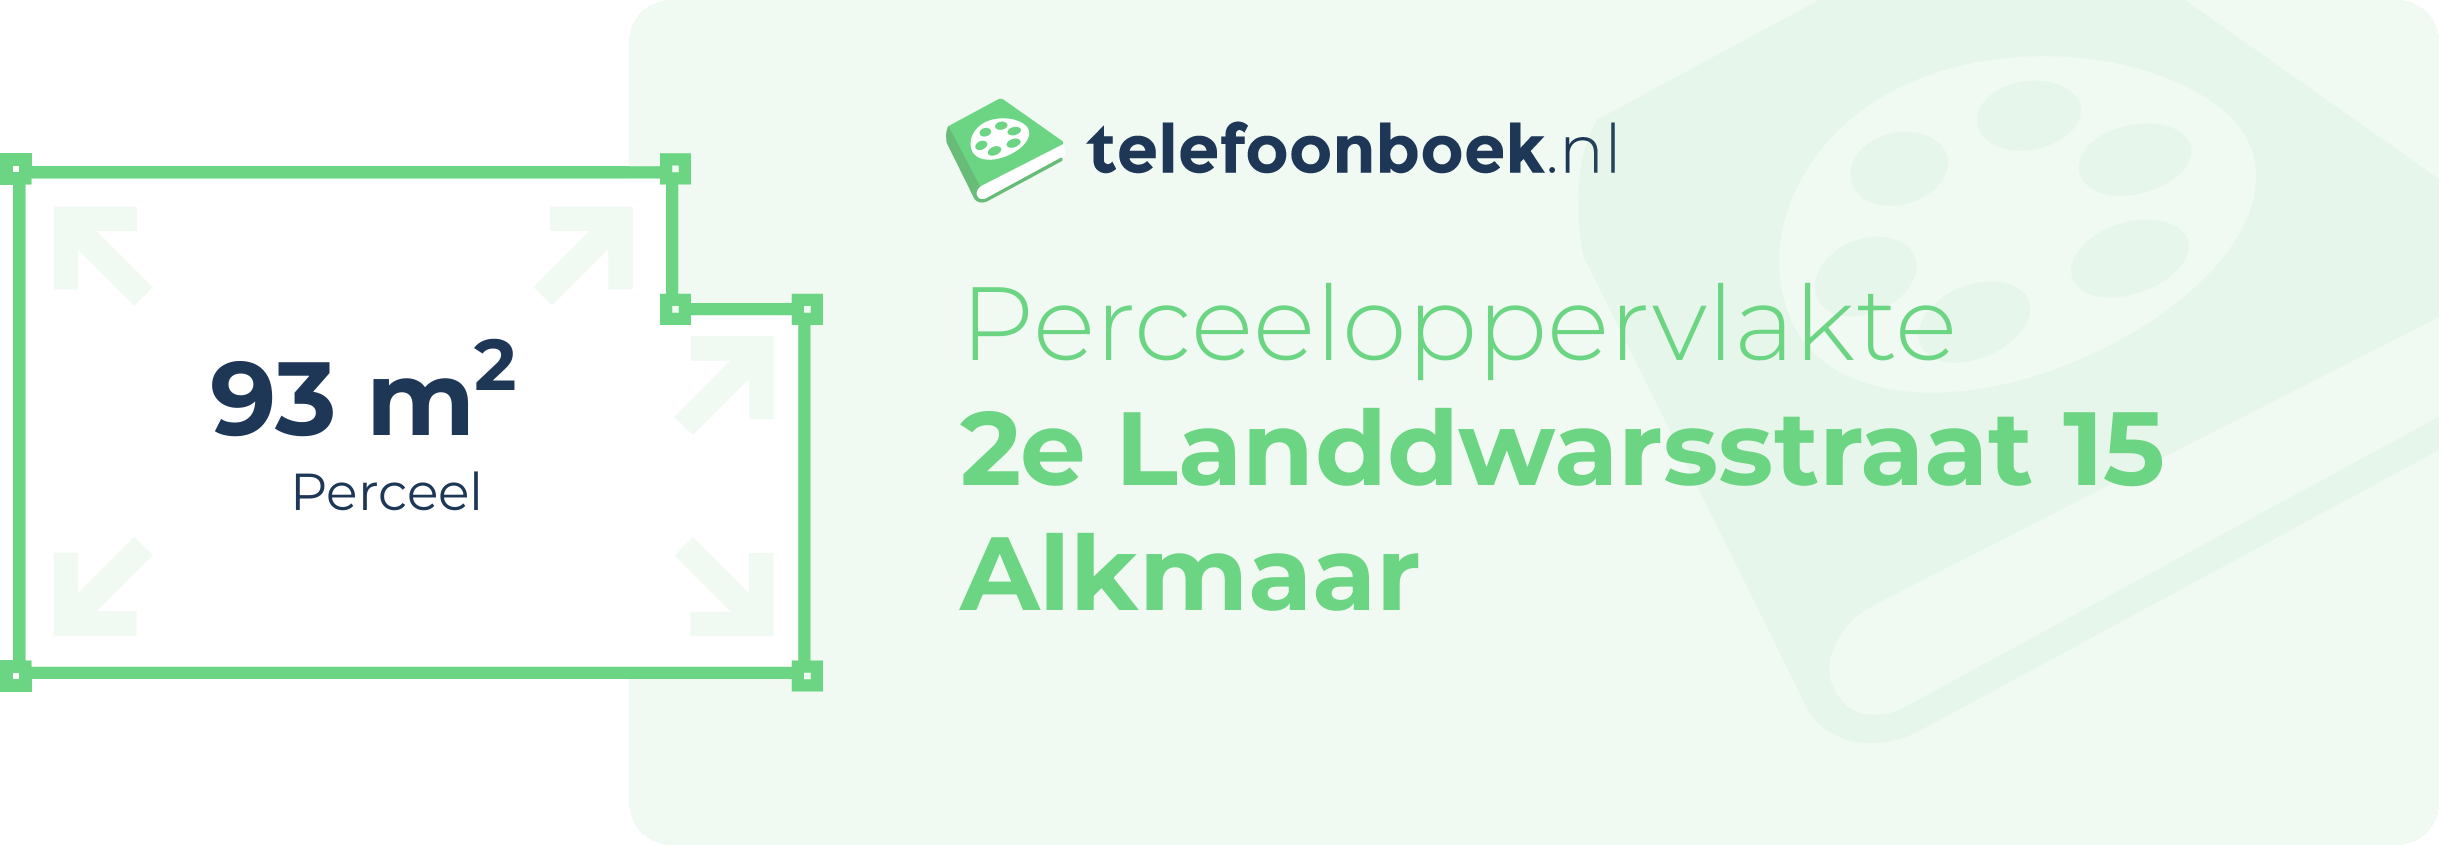 Perceeloppervlakte 2e Landdwarsstraat 15 Alkmaar